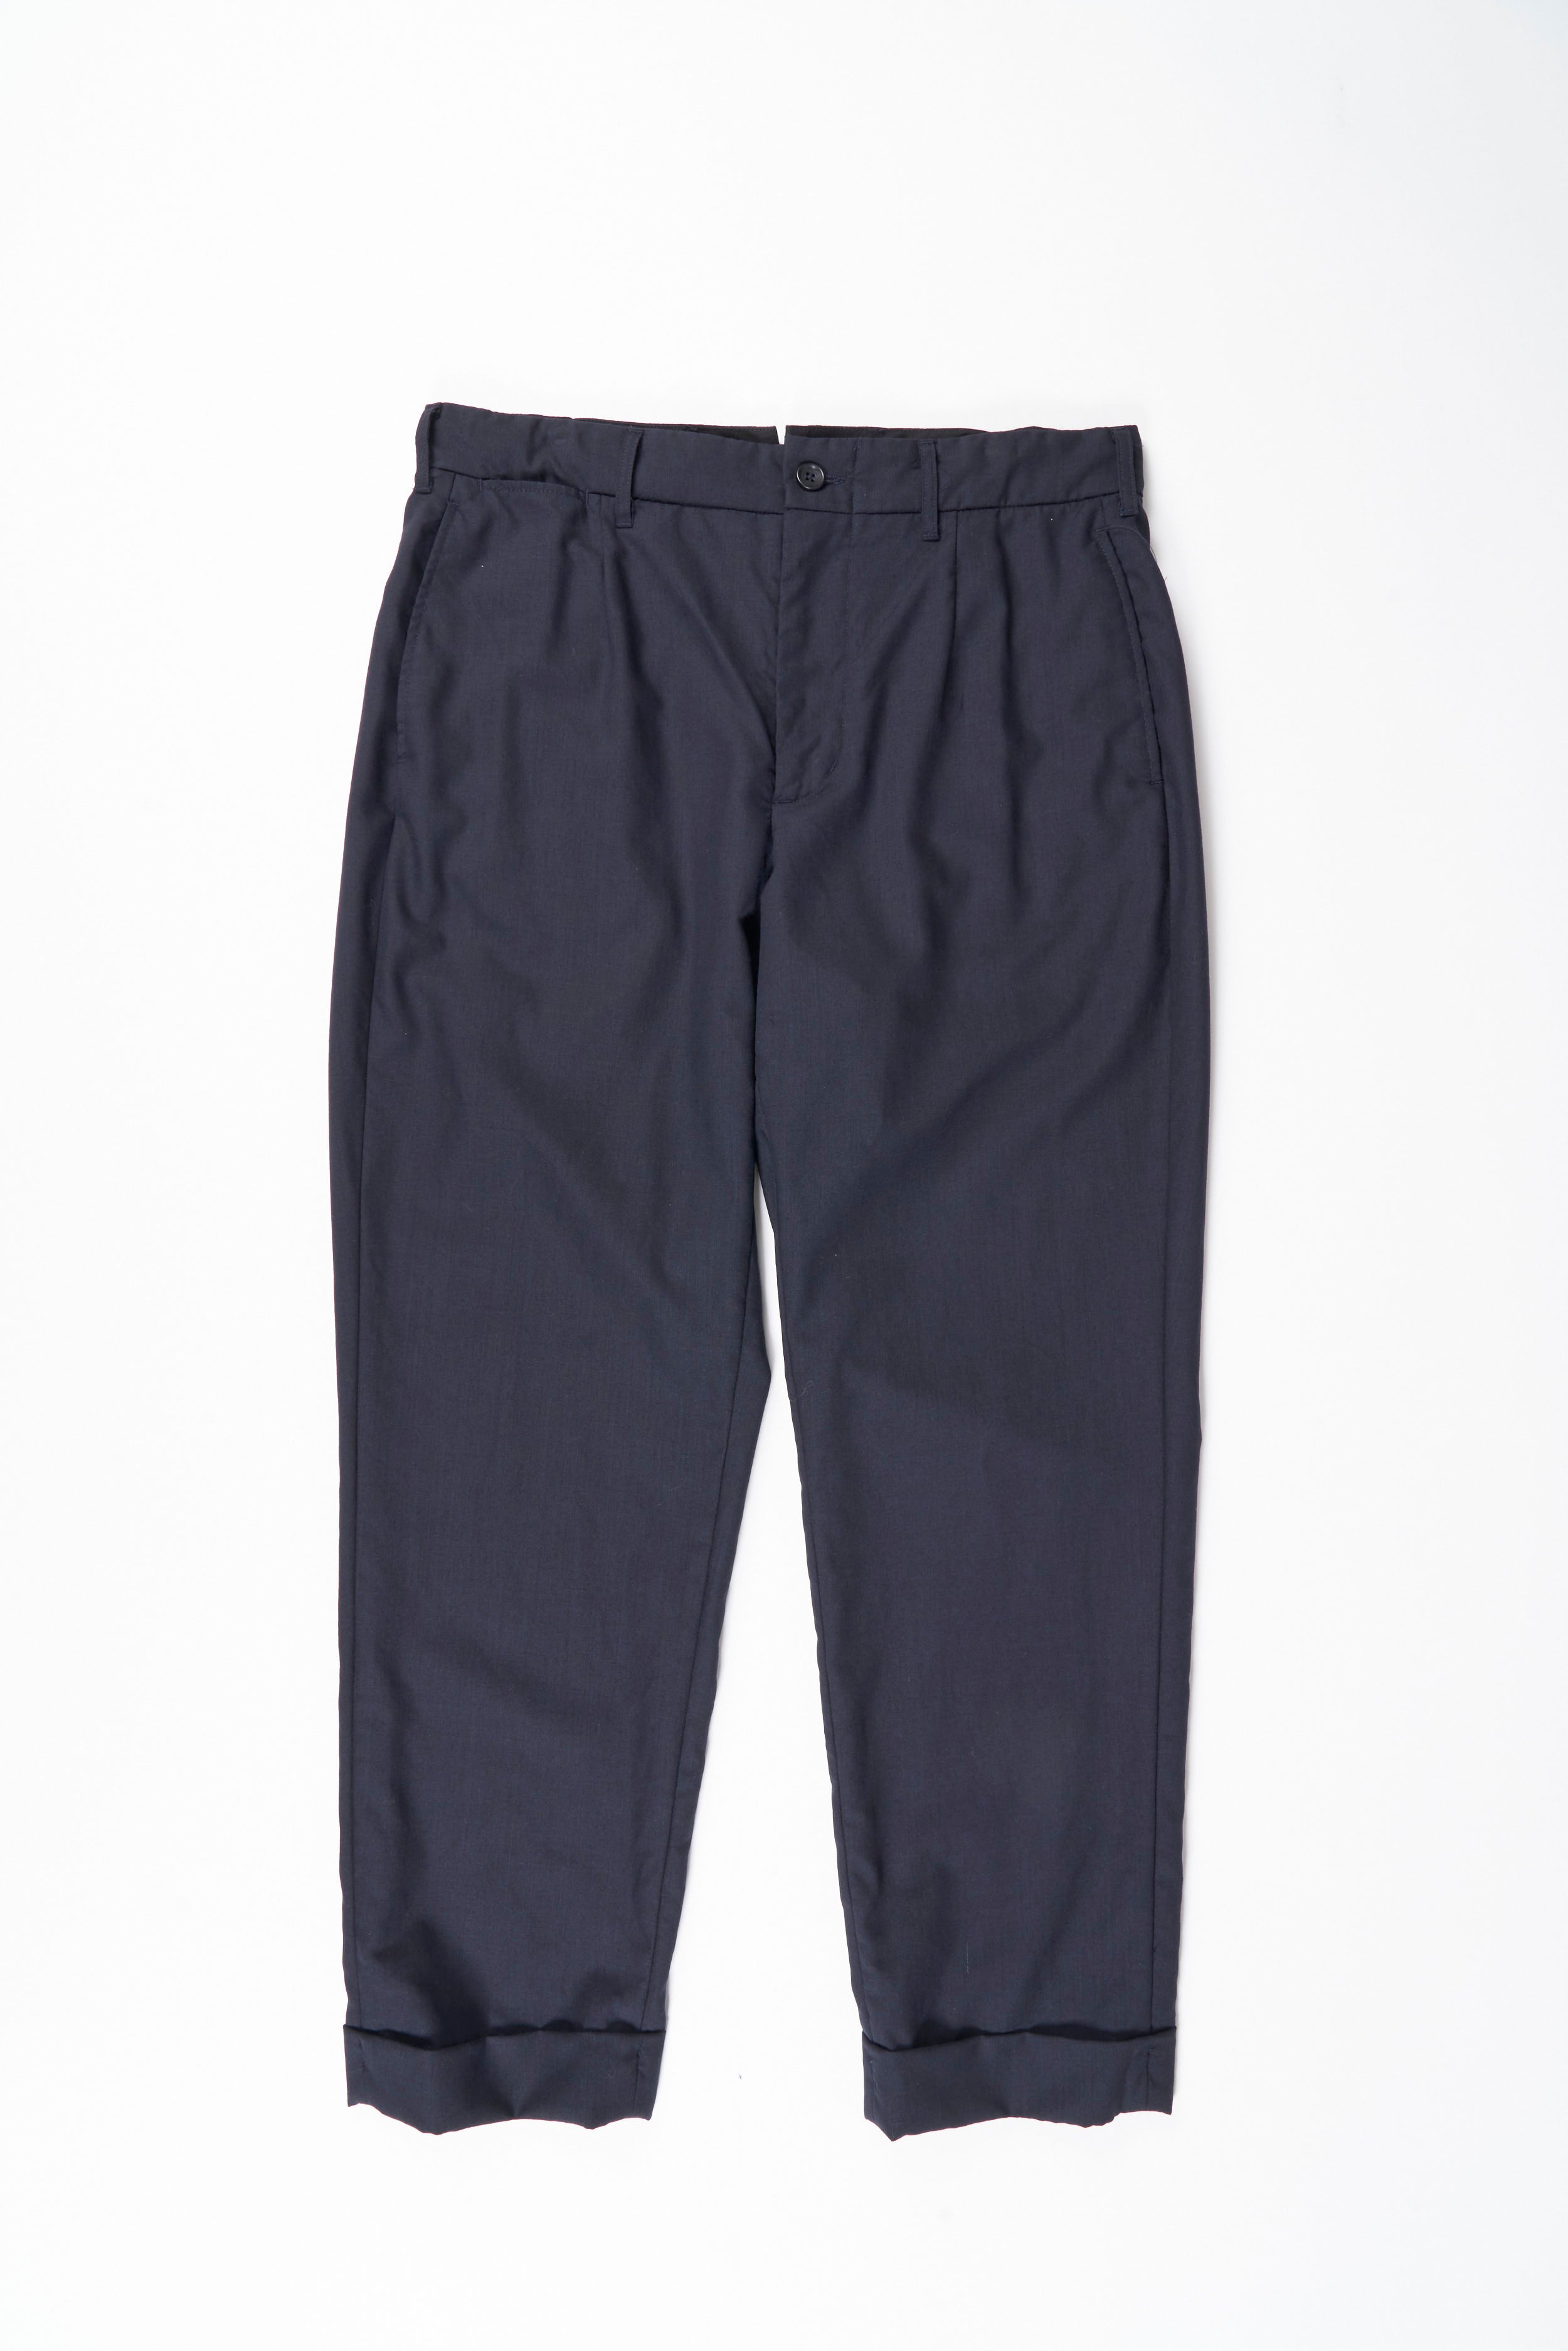 Pallet - 295 Pcs - Unsorted, Jeans, Pants, Legging & Shorts